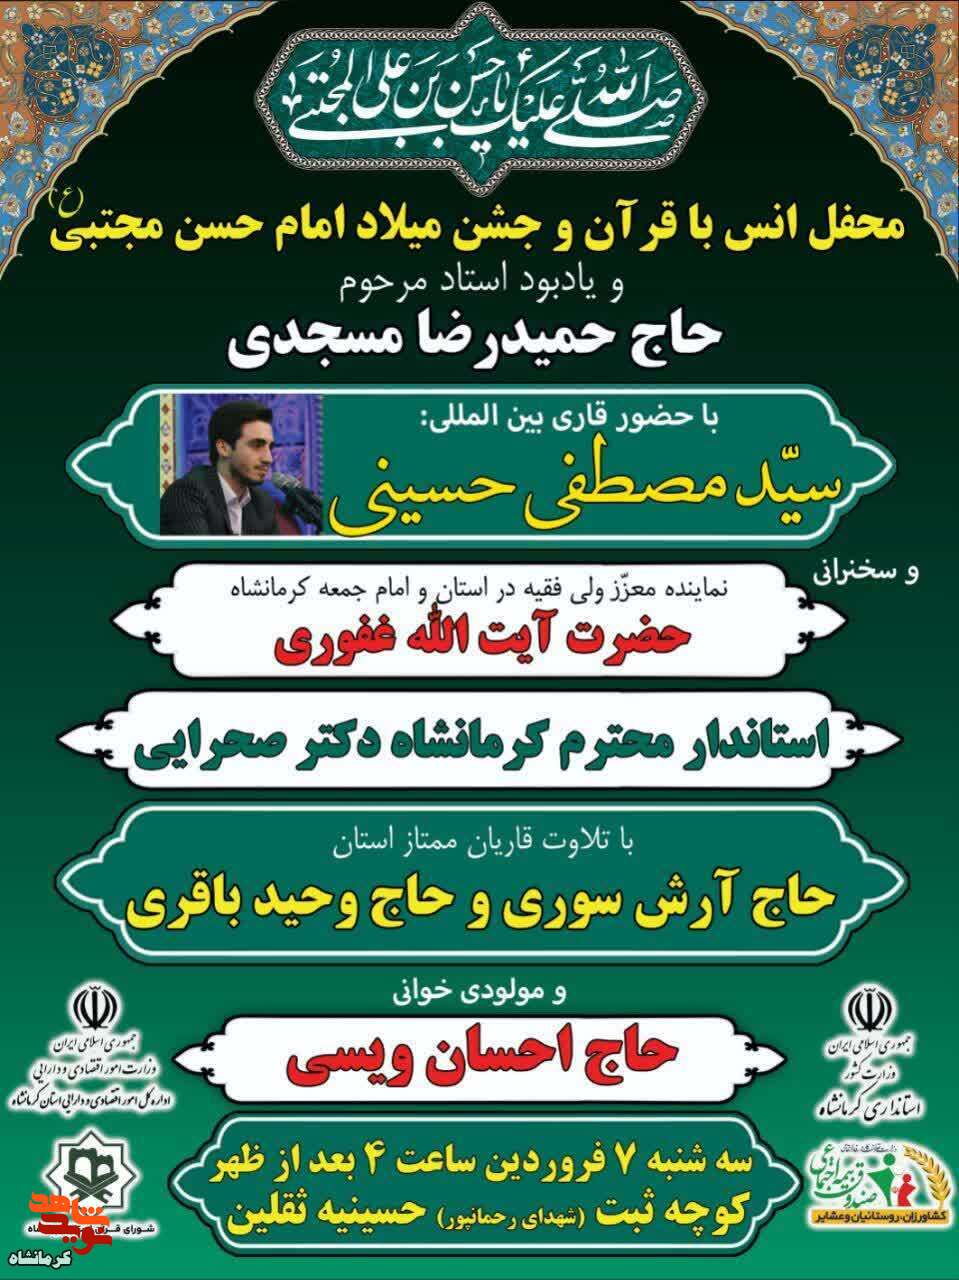 محفل انس با قرآن کریم در کرمانشاه برگزار می شود